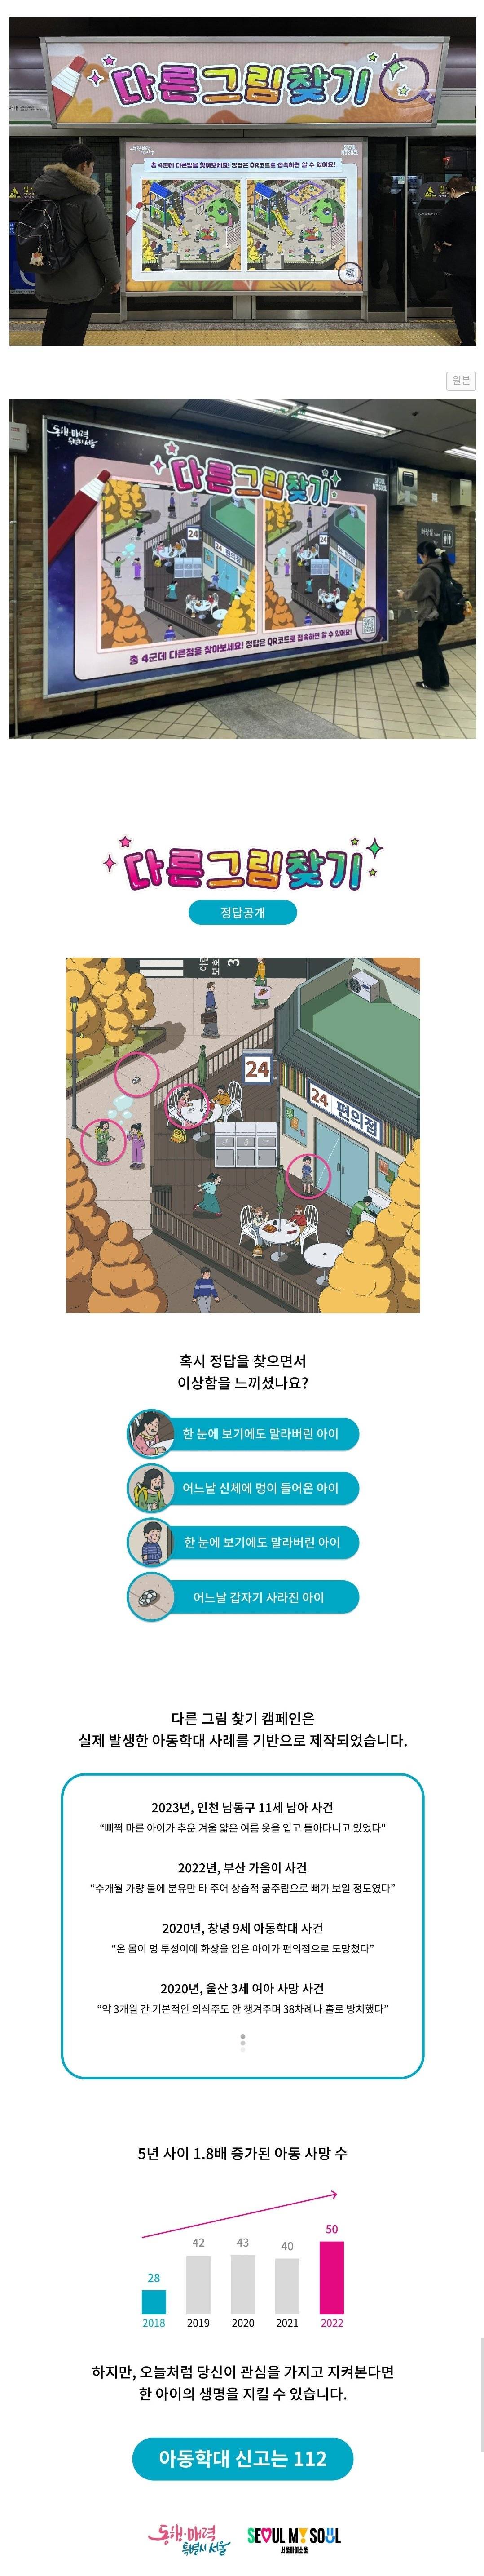 최근 서울시가 내놓은 소름 돋는 광고 게임 | 인스티즈